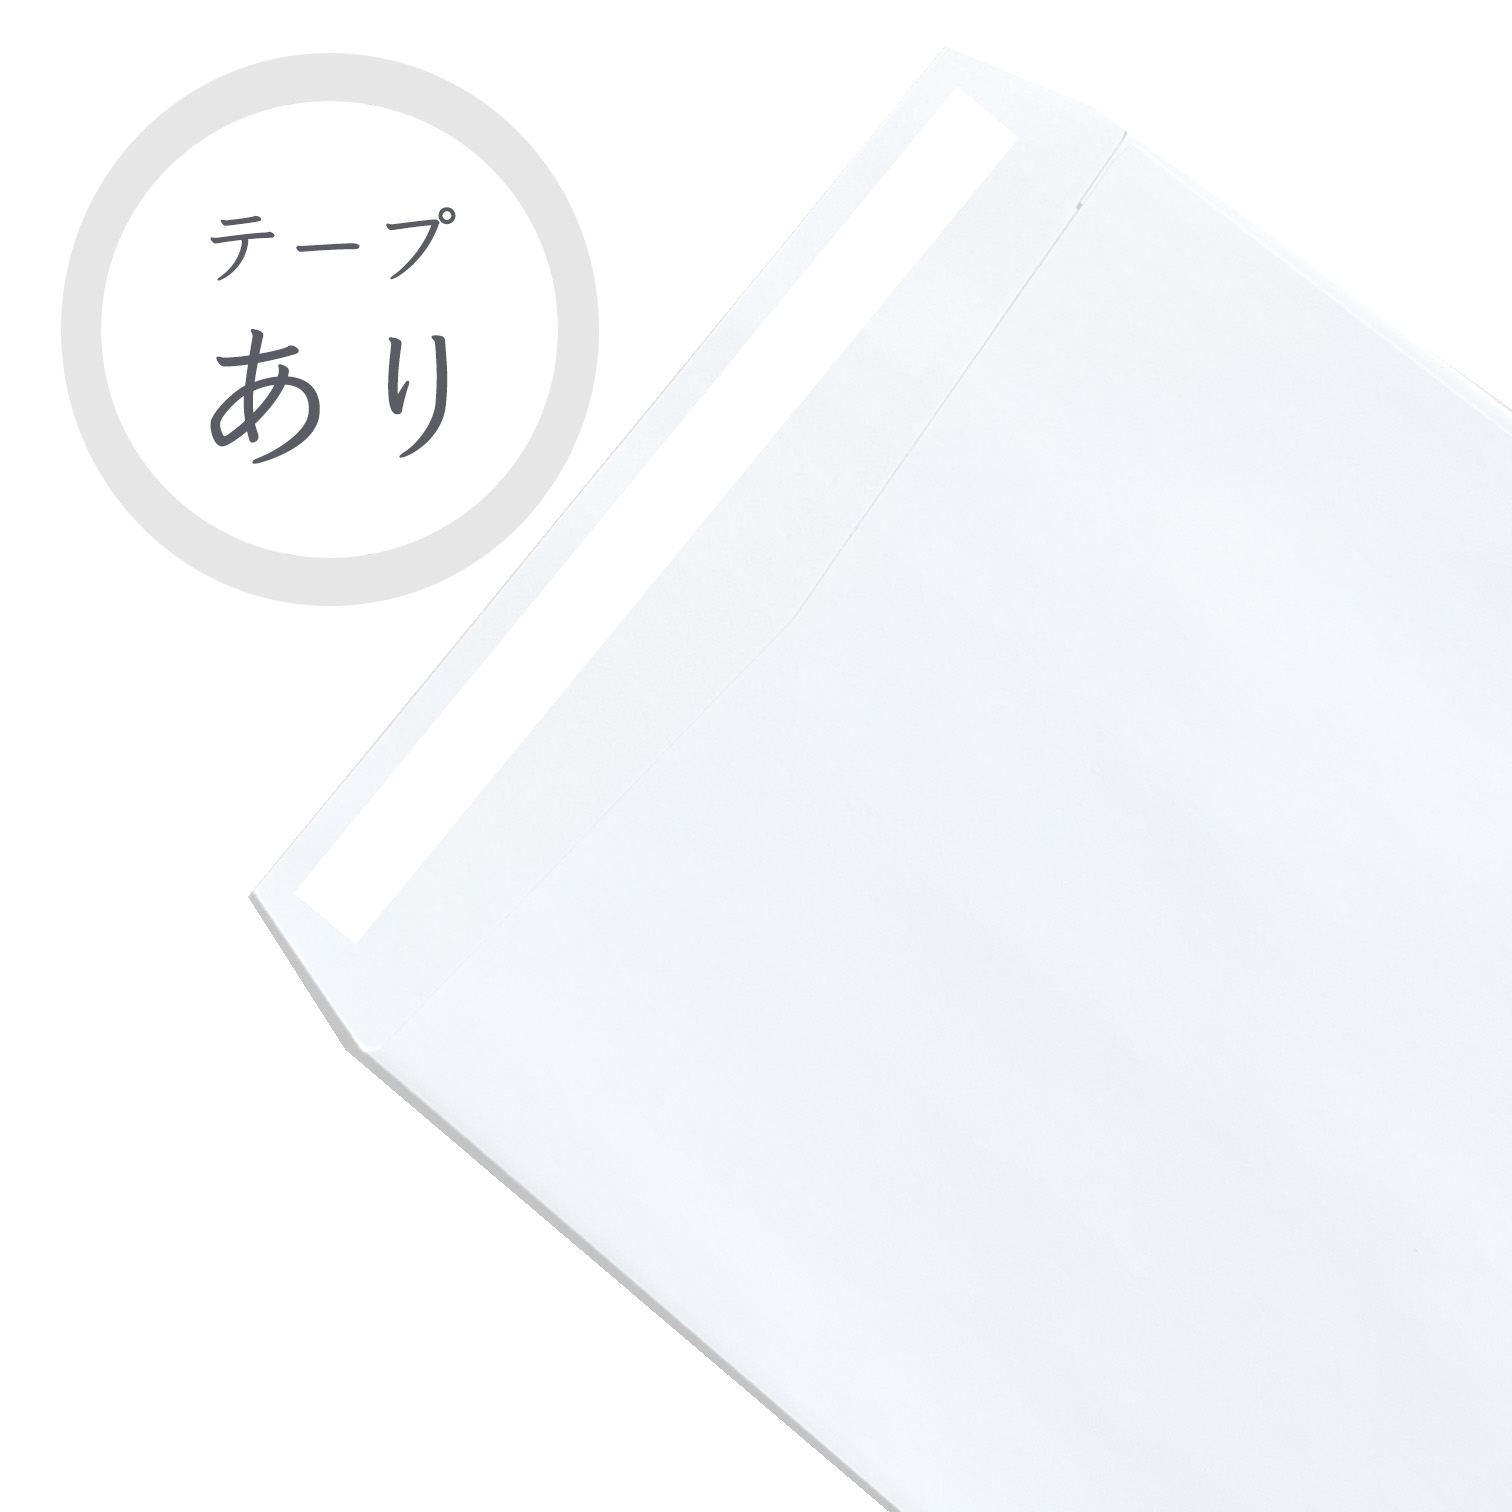 長4ホワイト封筒 70g/平米 ファインタック付 1000枚 商品画像サムネイル5